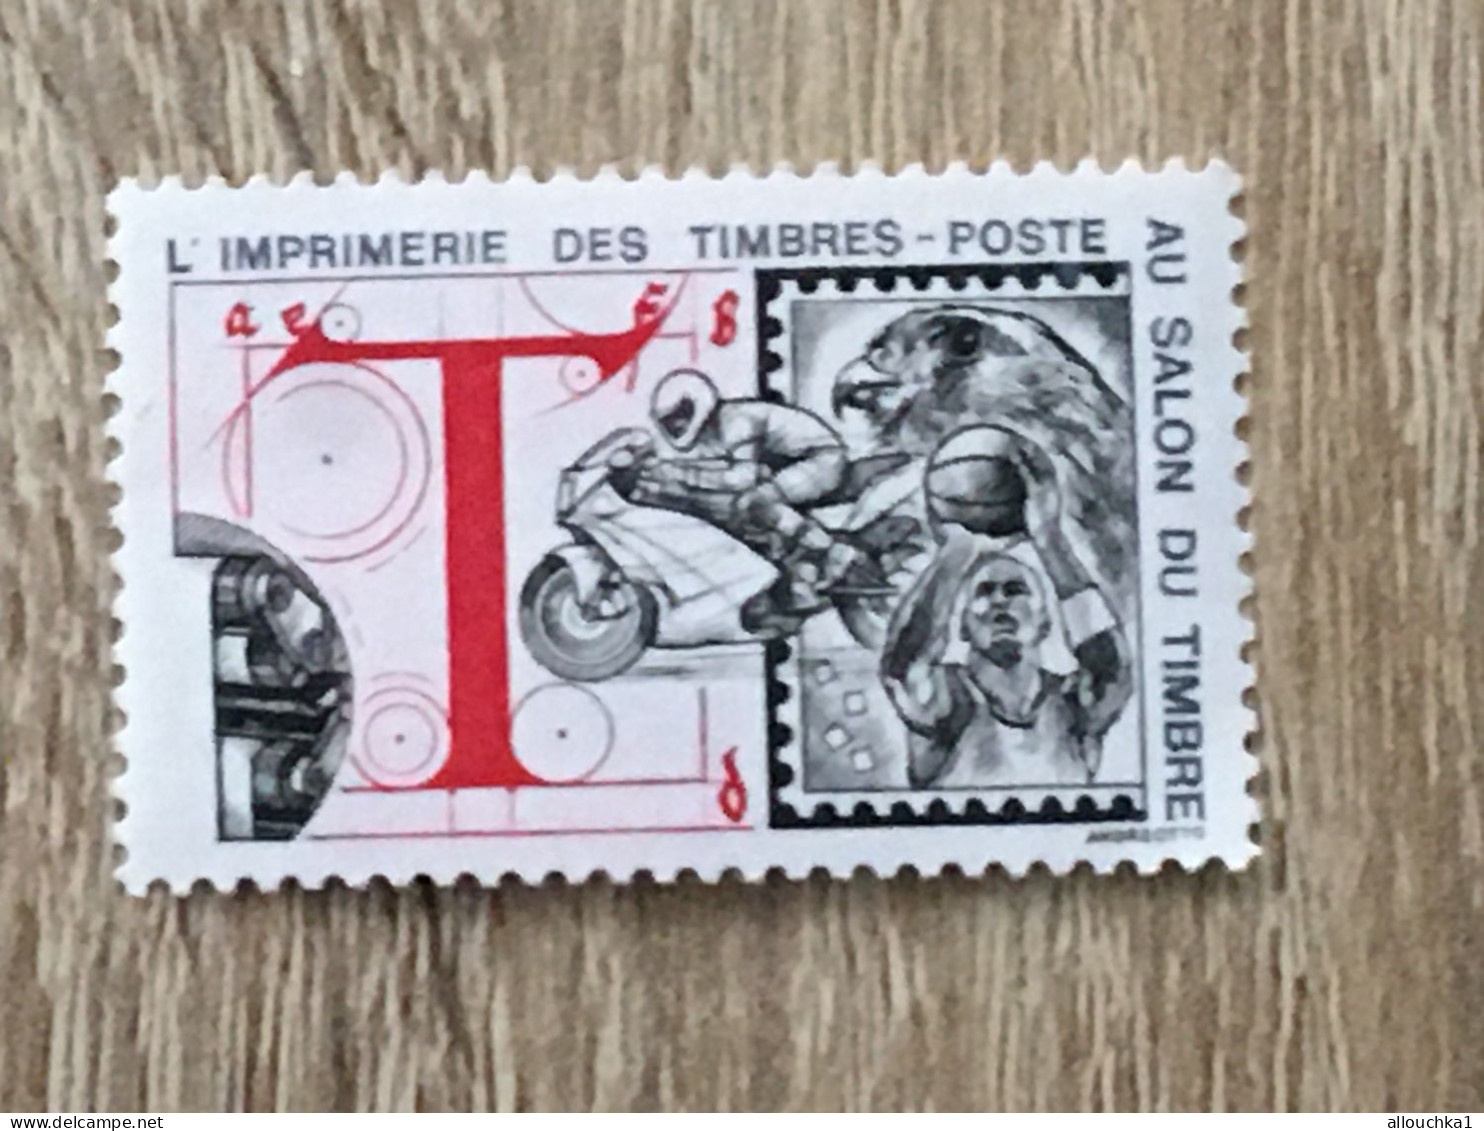 Imprimerie Timbres Poste Au Salon Du Timbre-2 Timbres Vignette**Expo-Philatélique-Erinnophilie-[E]Stamp-Sticker-Viñeta - Exposiciones Filatelicas